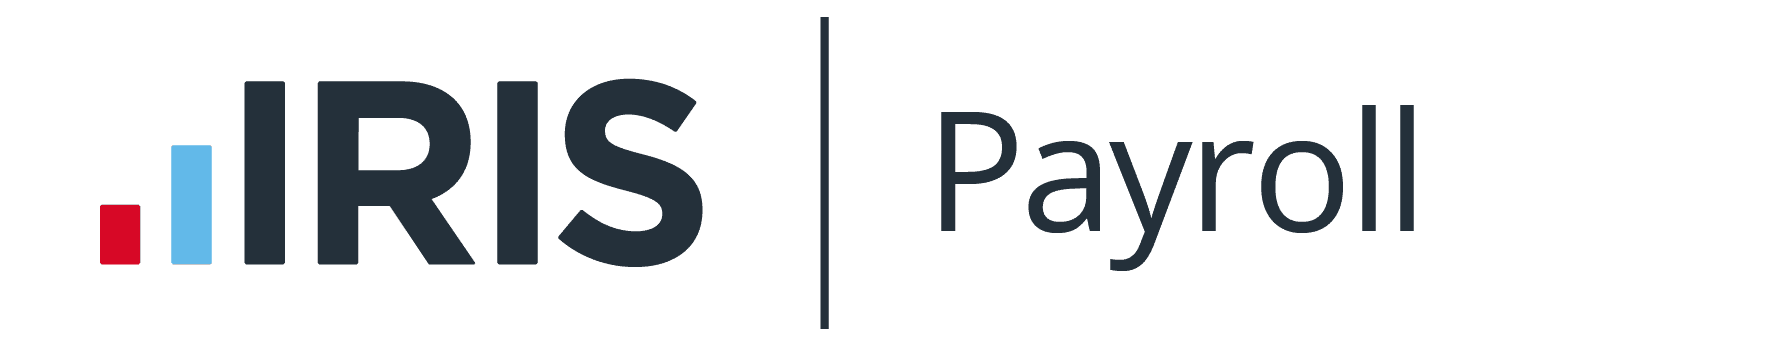 IRIS Payroll logo